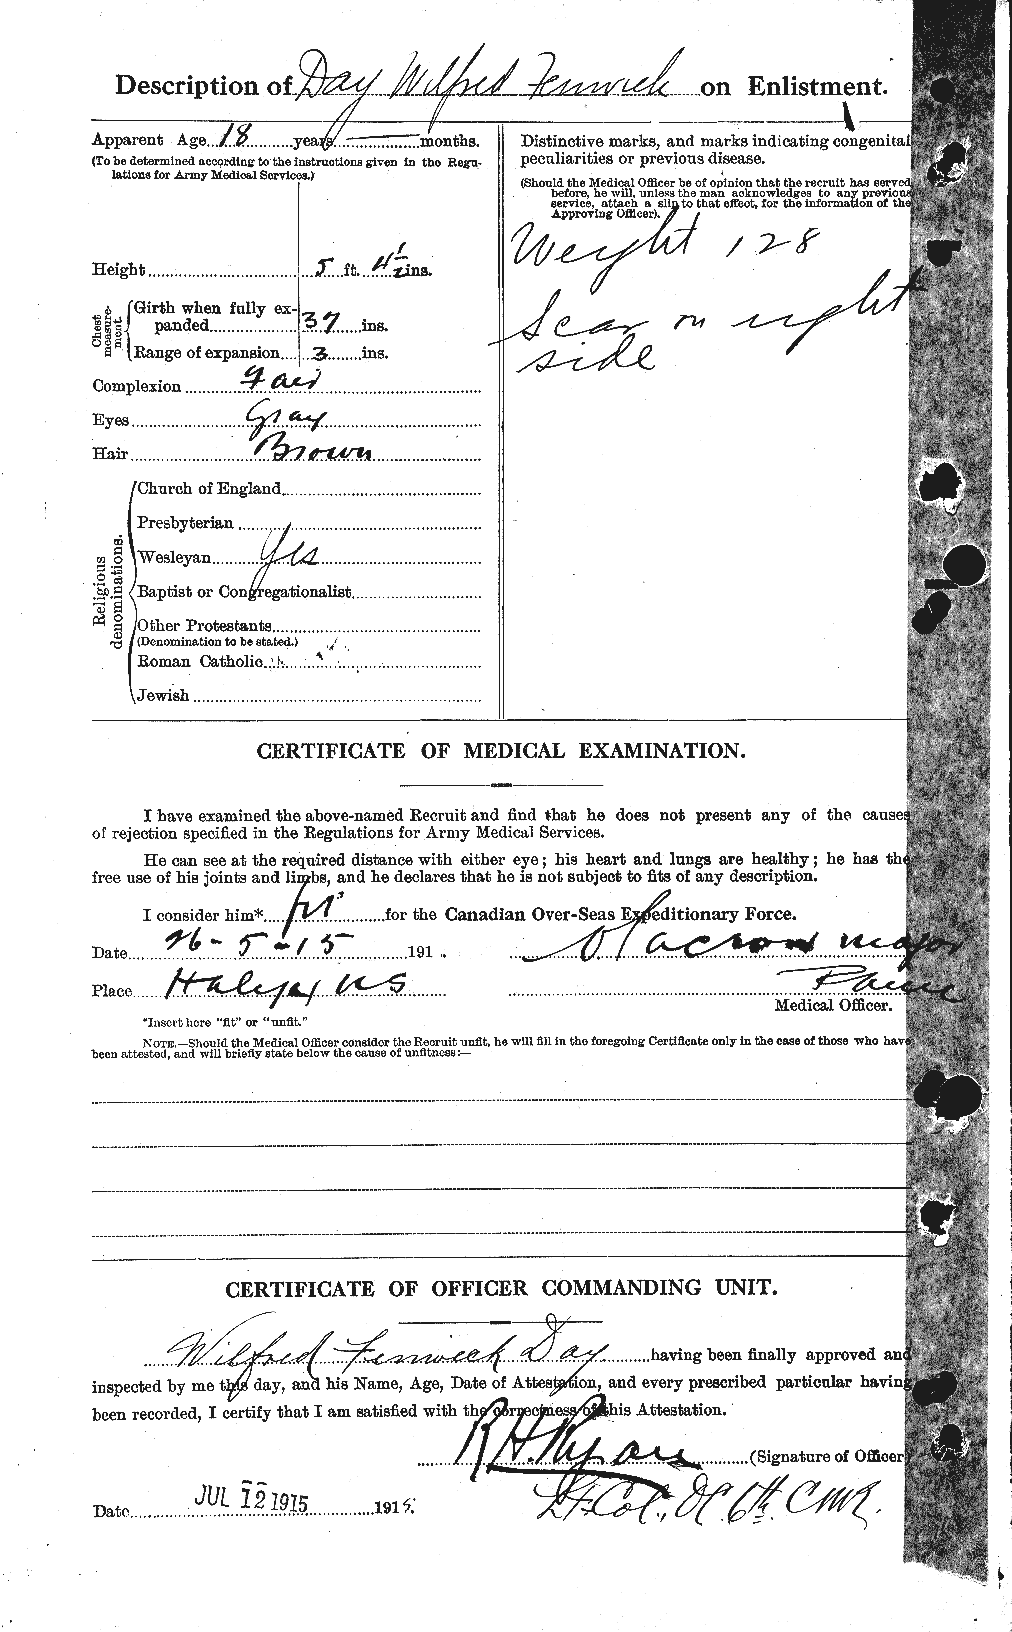 Dossiers du Personnel de la Première Guerre mondiale - CEC 283518b